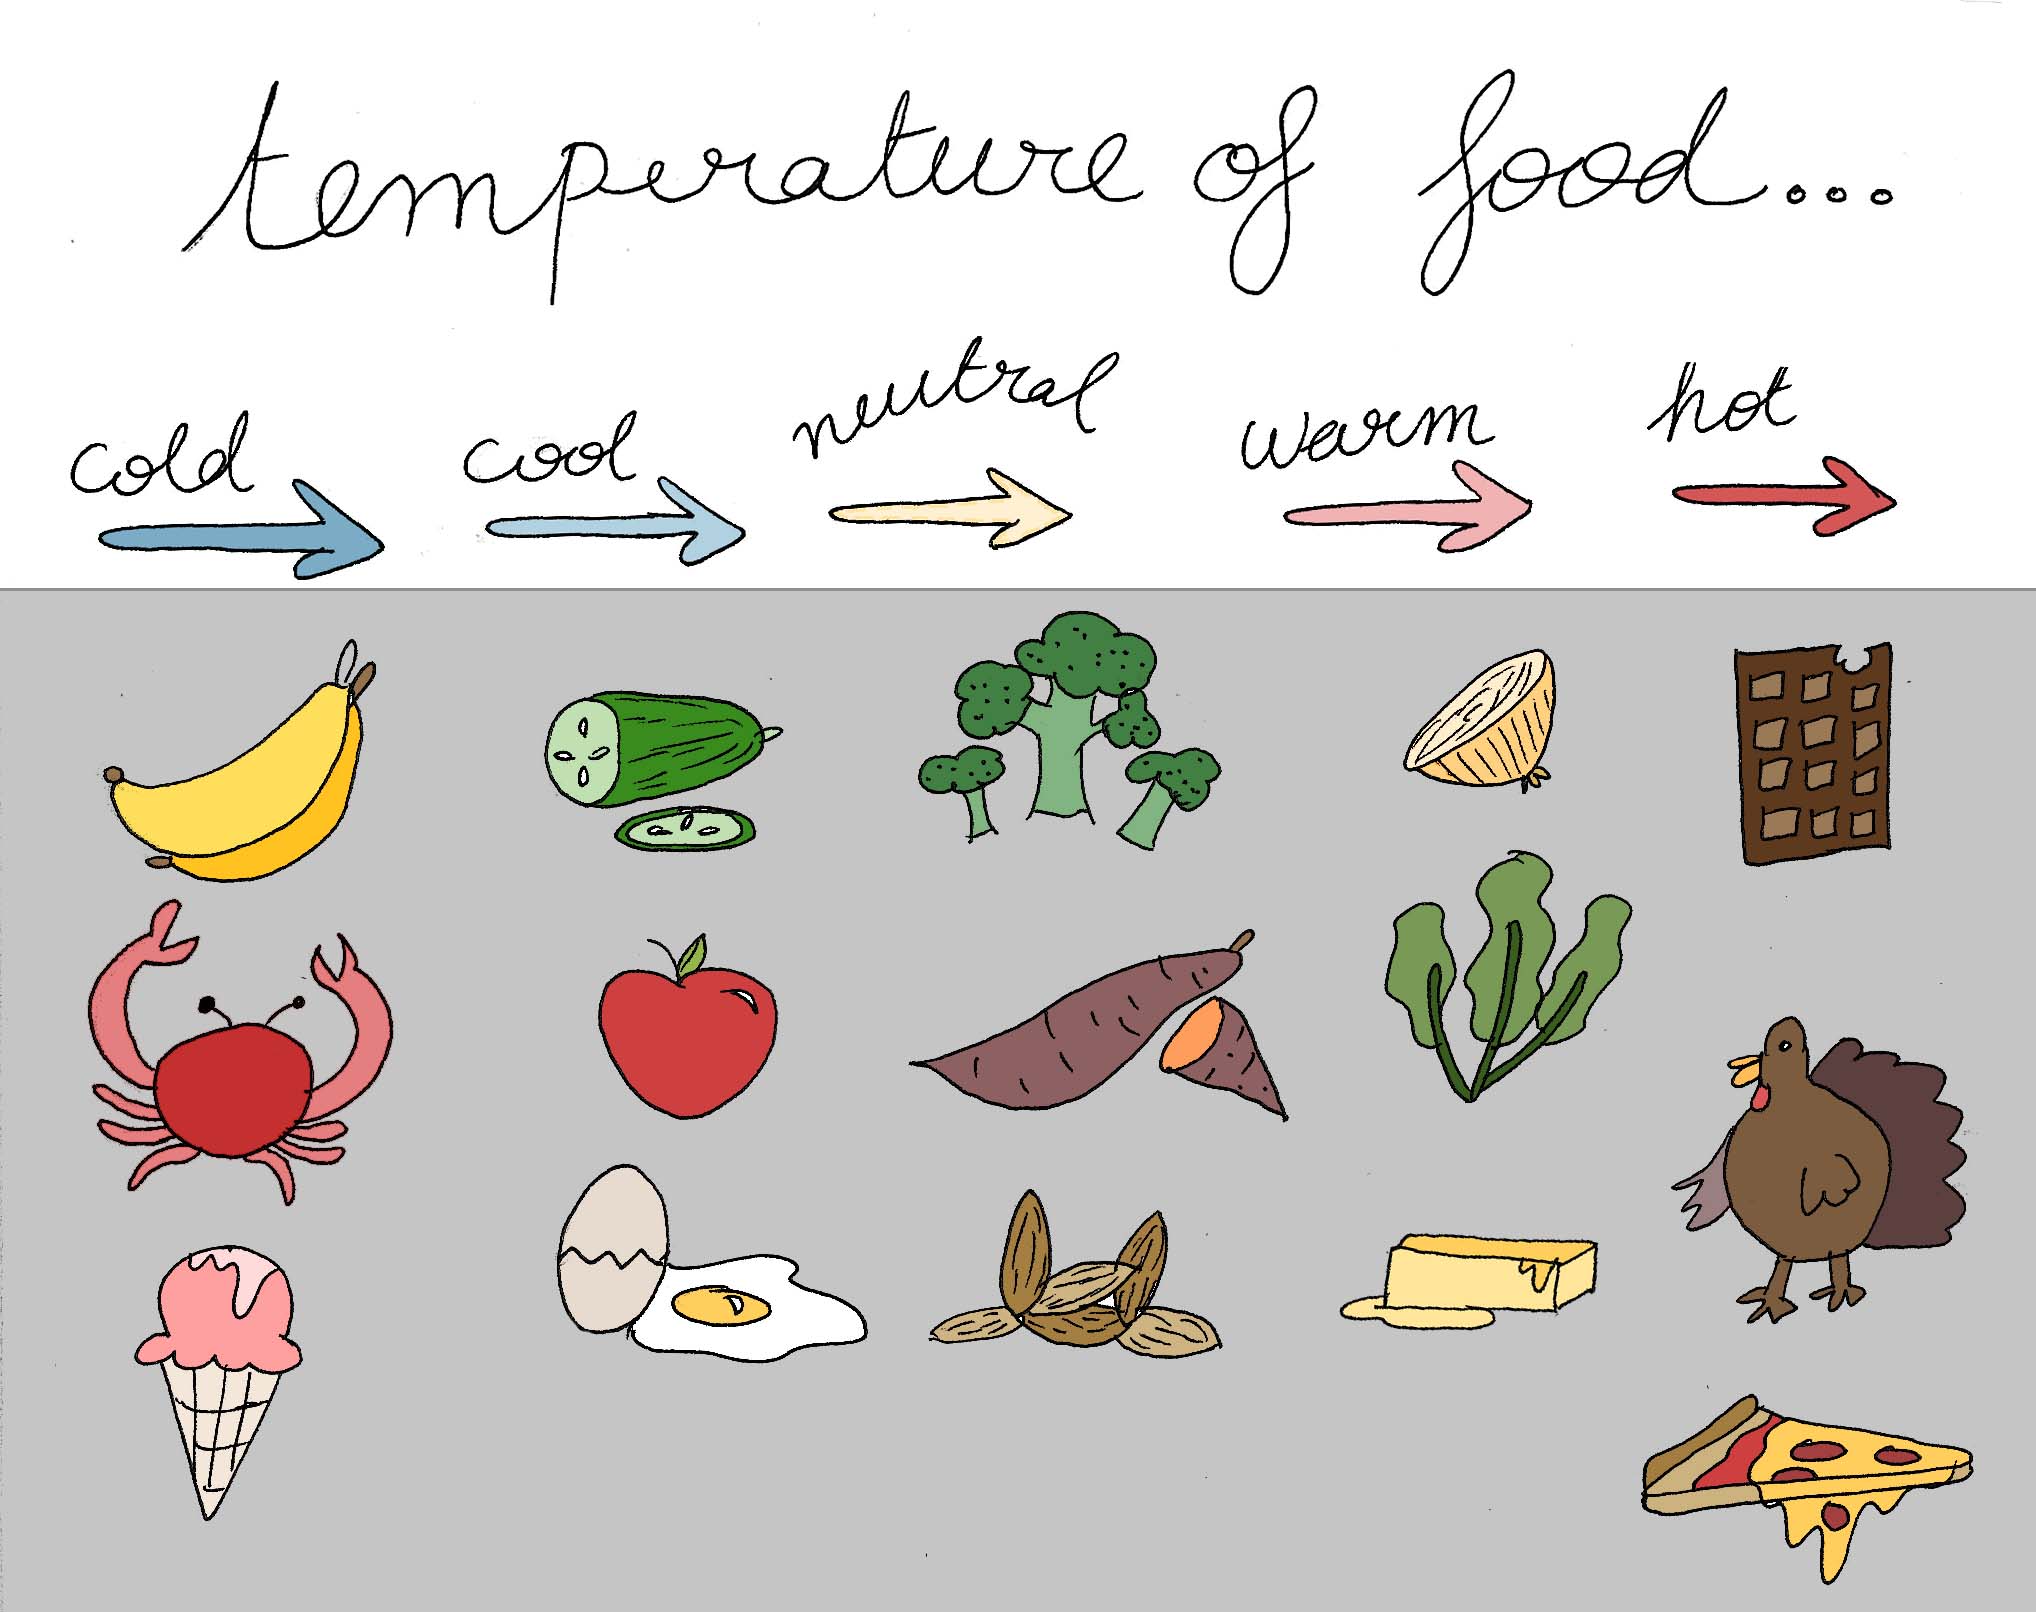 Spectrum of food temperatures